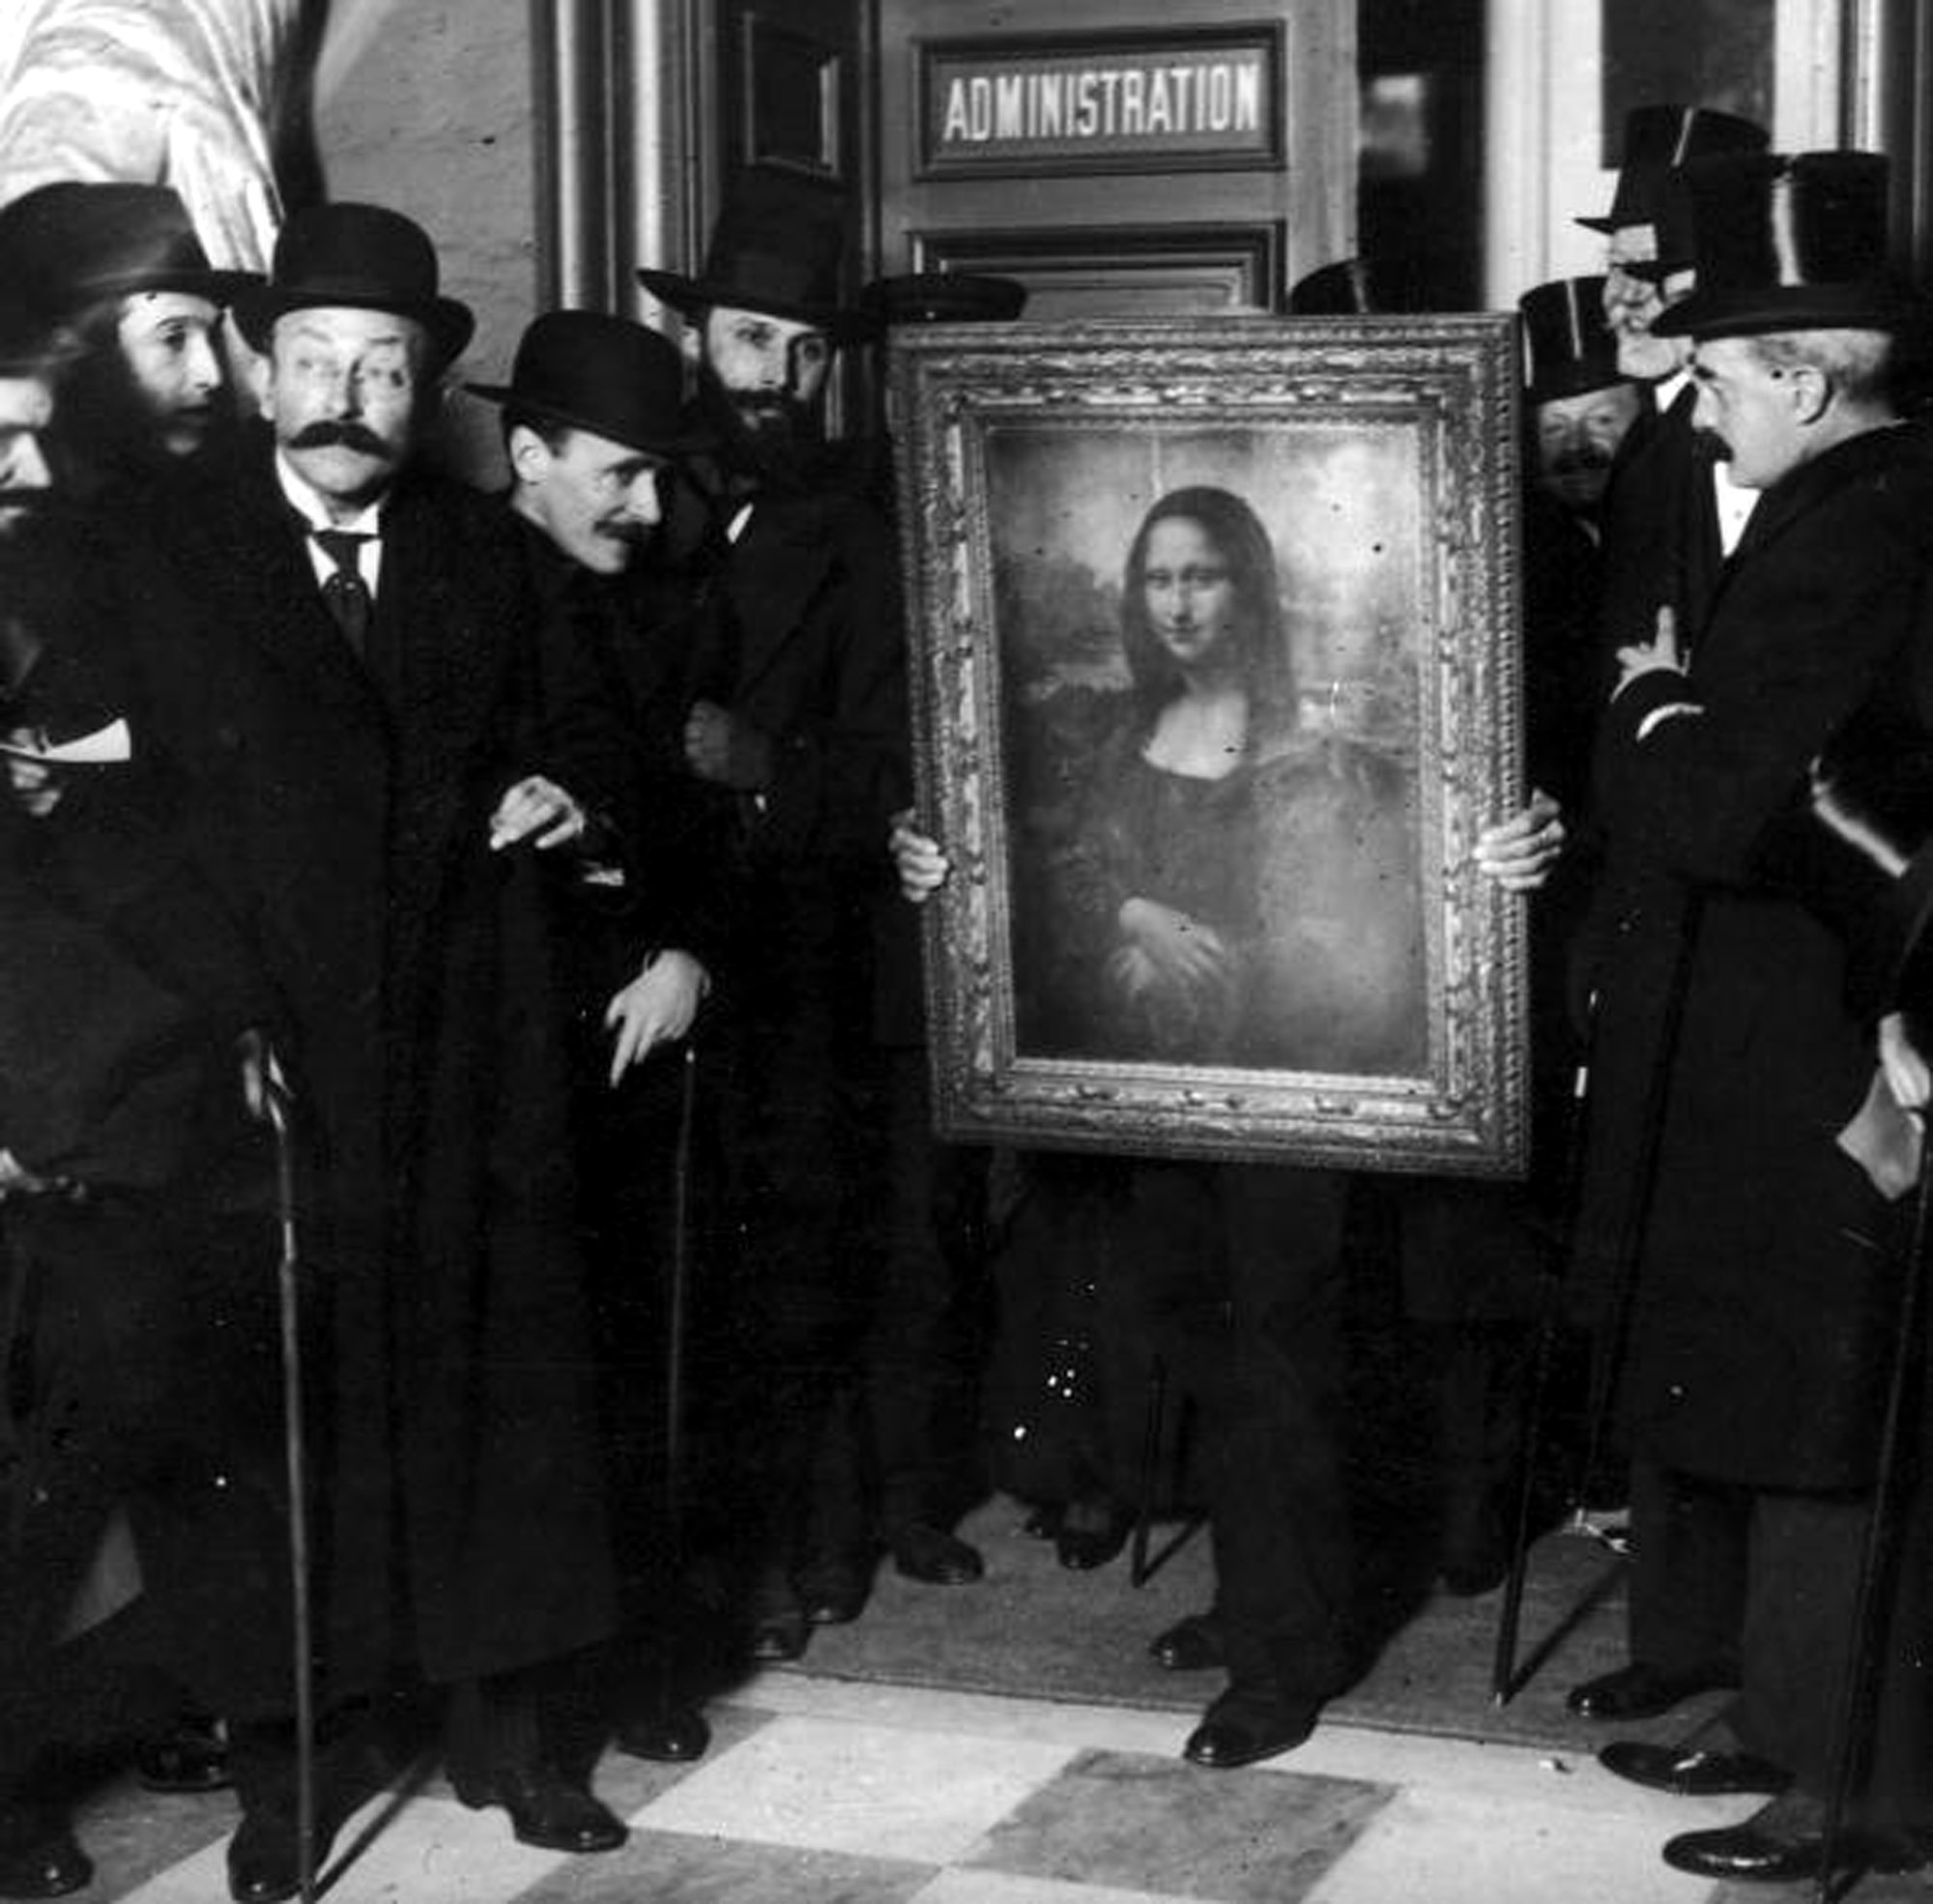 لوحة موناليزا بعد عودتها من إيطاليا بعد حادث سرقتها